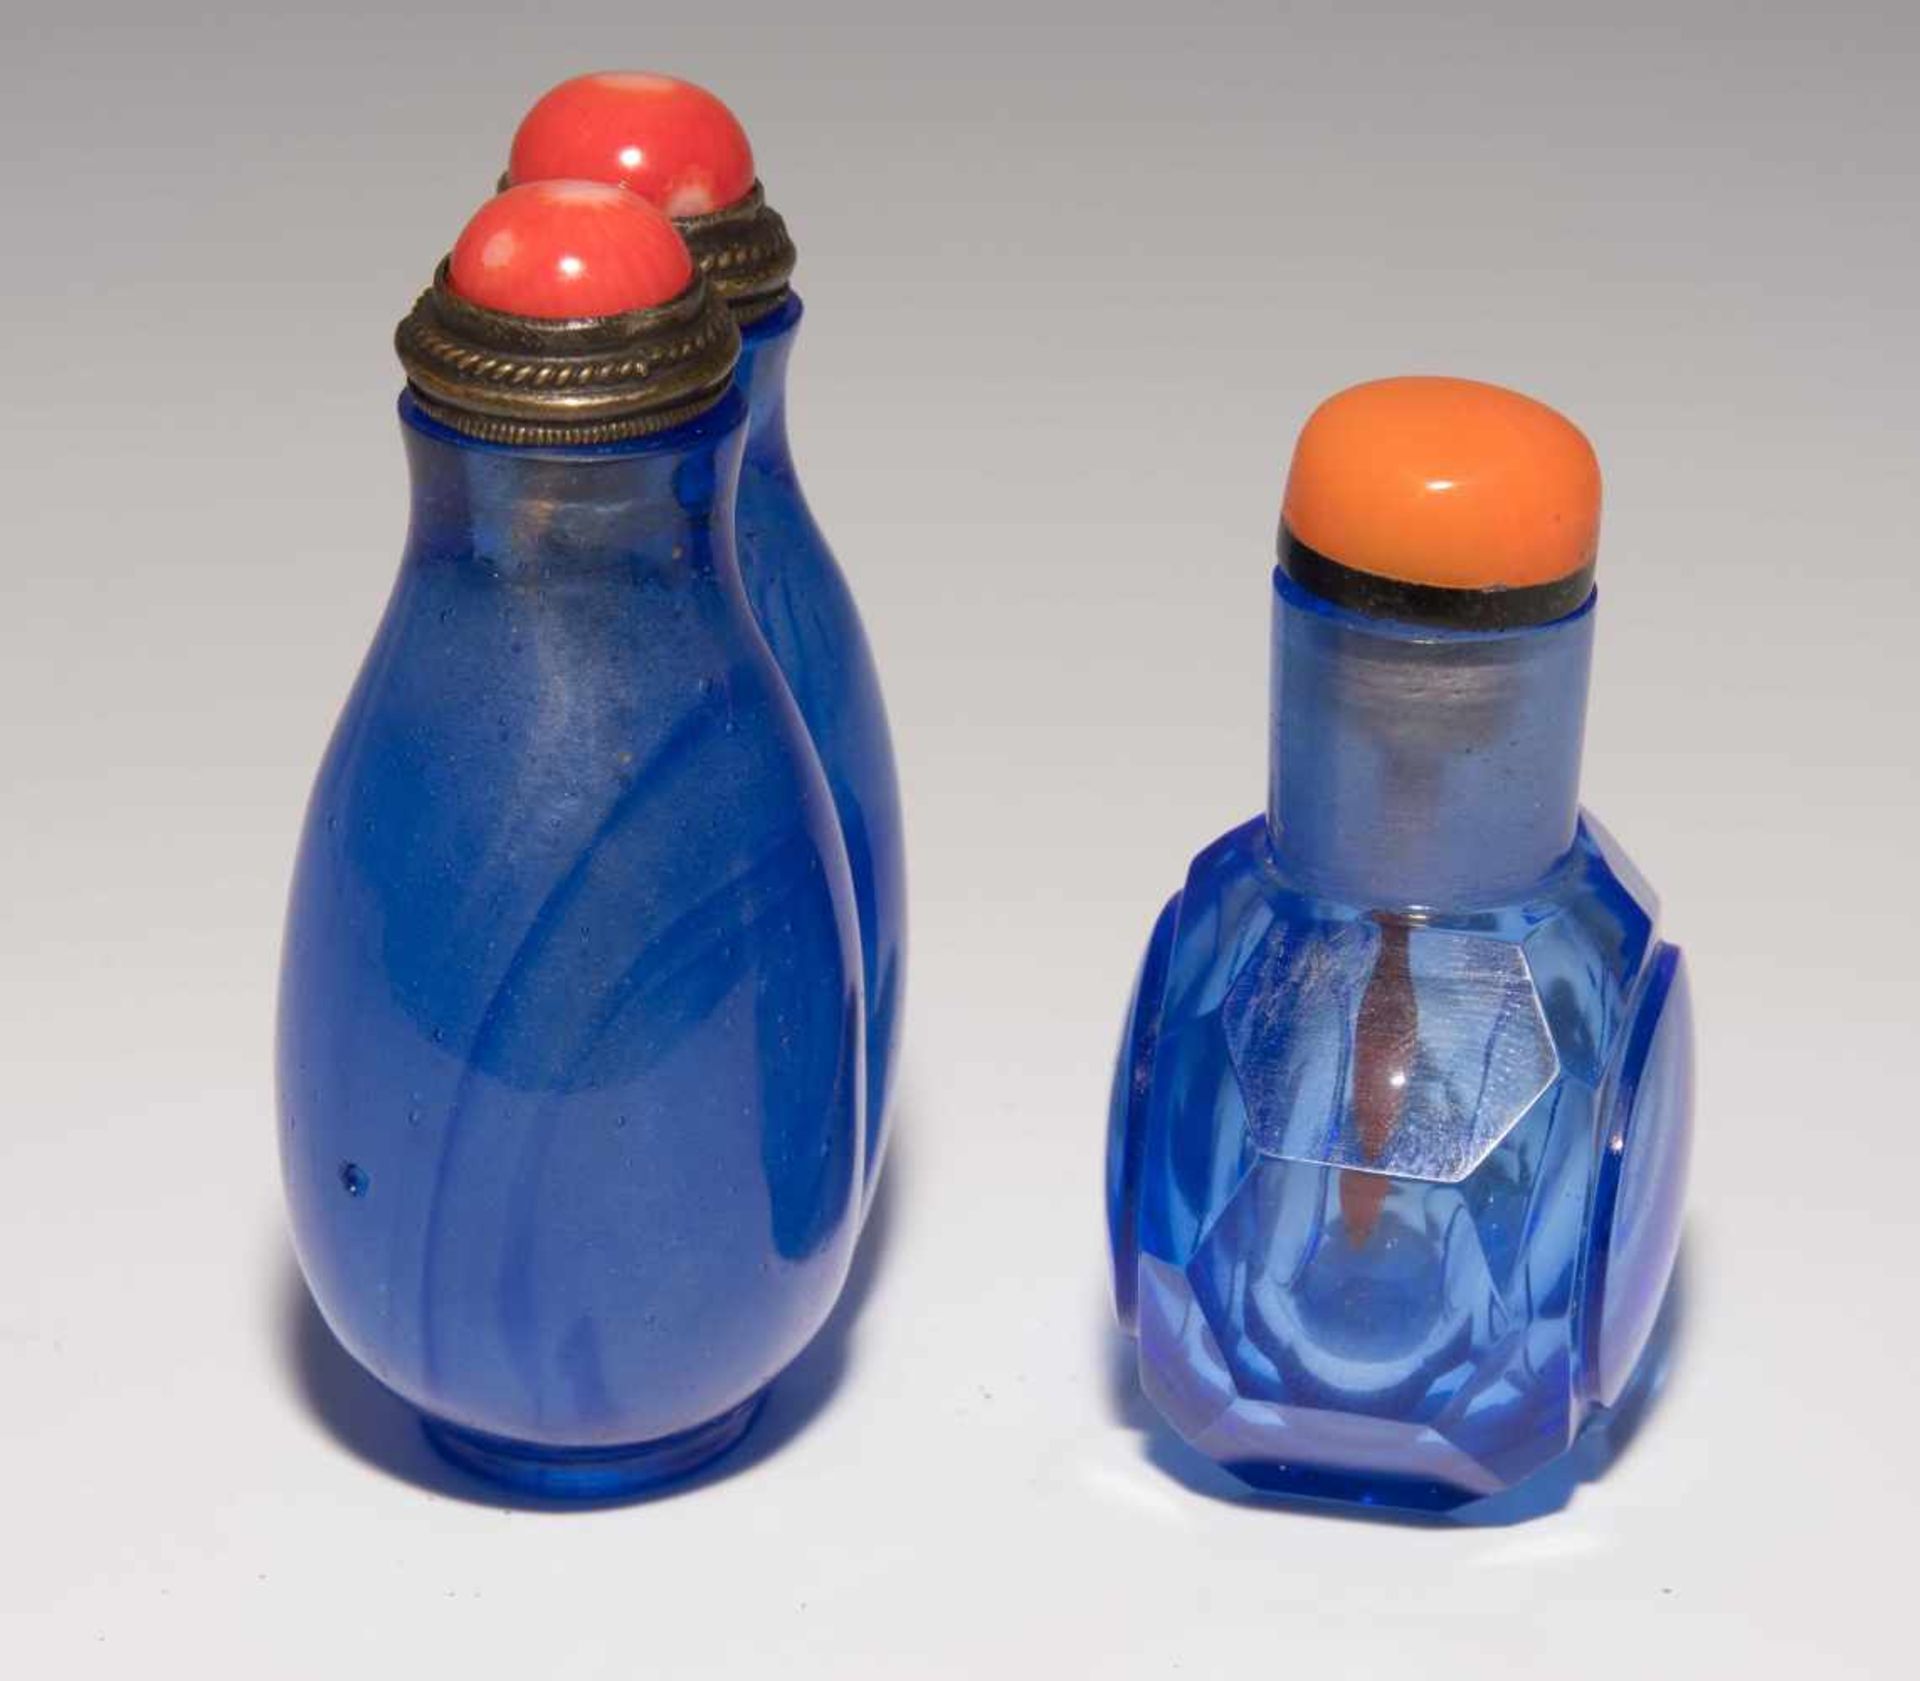 6 Glas Snuff BottlesChina. Hellblaues, transparentes Glas. Ein Doppel-Snuff Bottle, zwei mit - Bild 4 aus 22